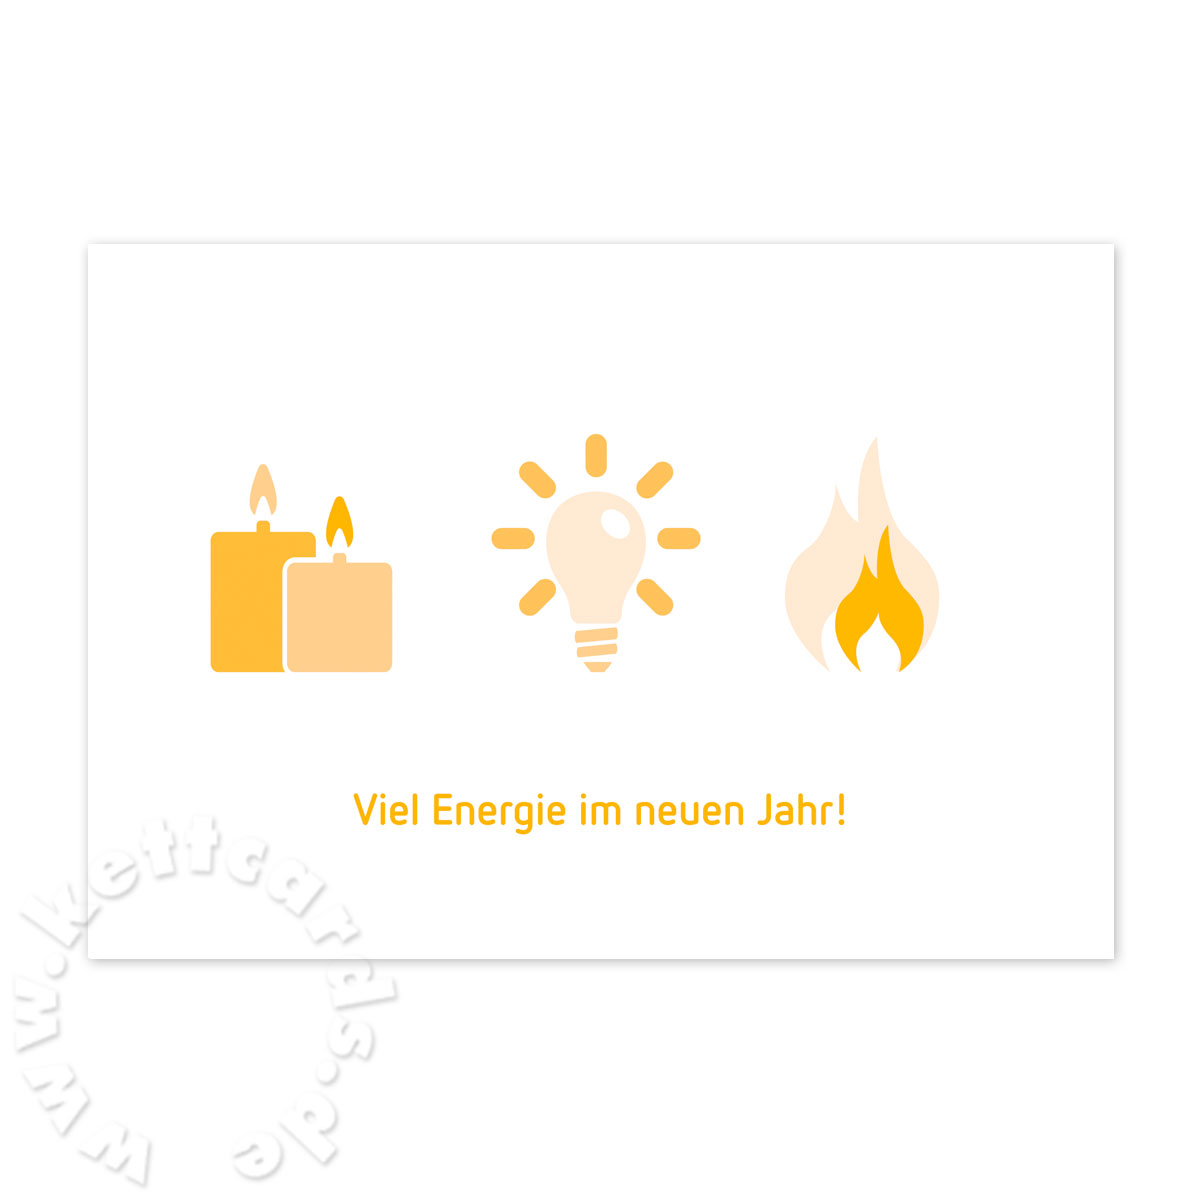 Viel Energie im neuen Jahr! monochrome Neujahrskarten